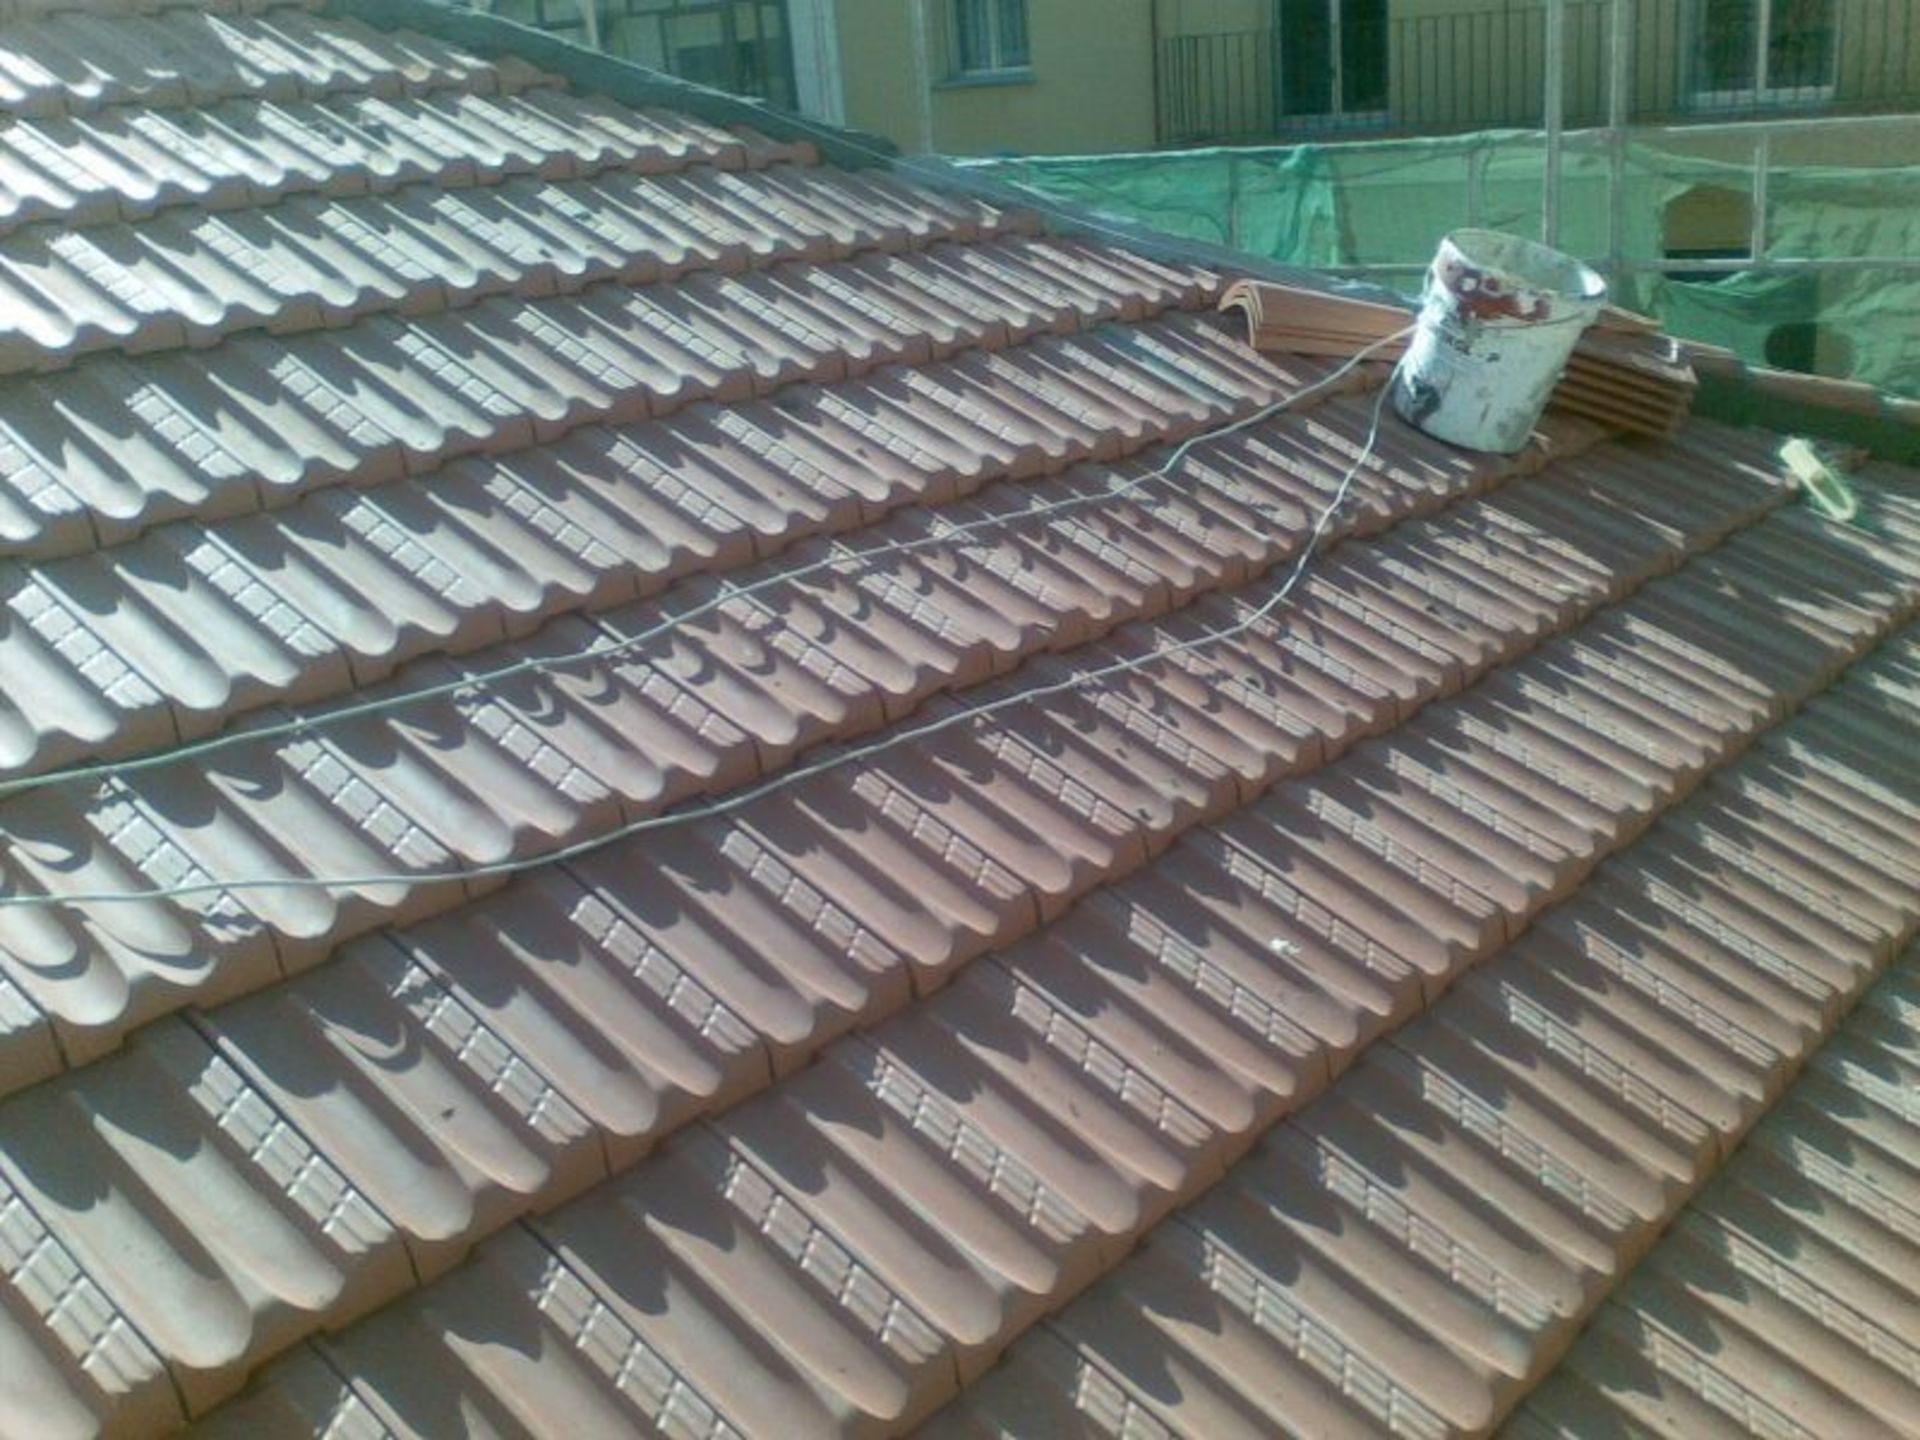 Rehabilitación de cubierta de edificio de viviendas en Getafe